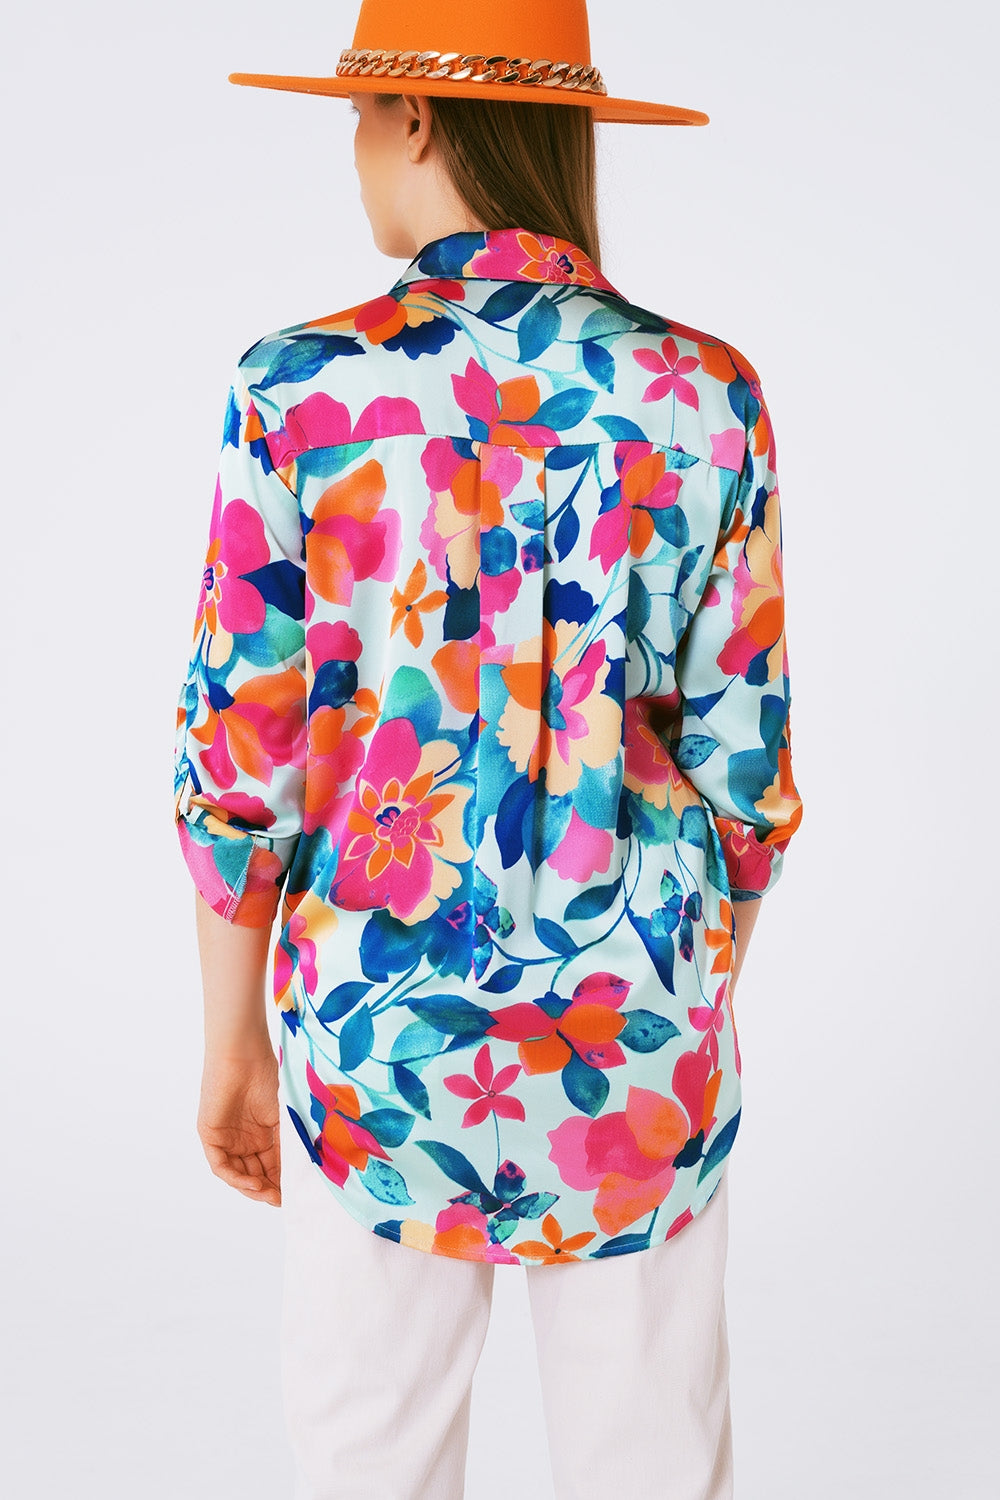 Soft satin blouse with flower print - Szua Store